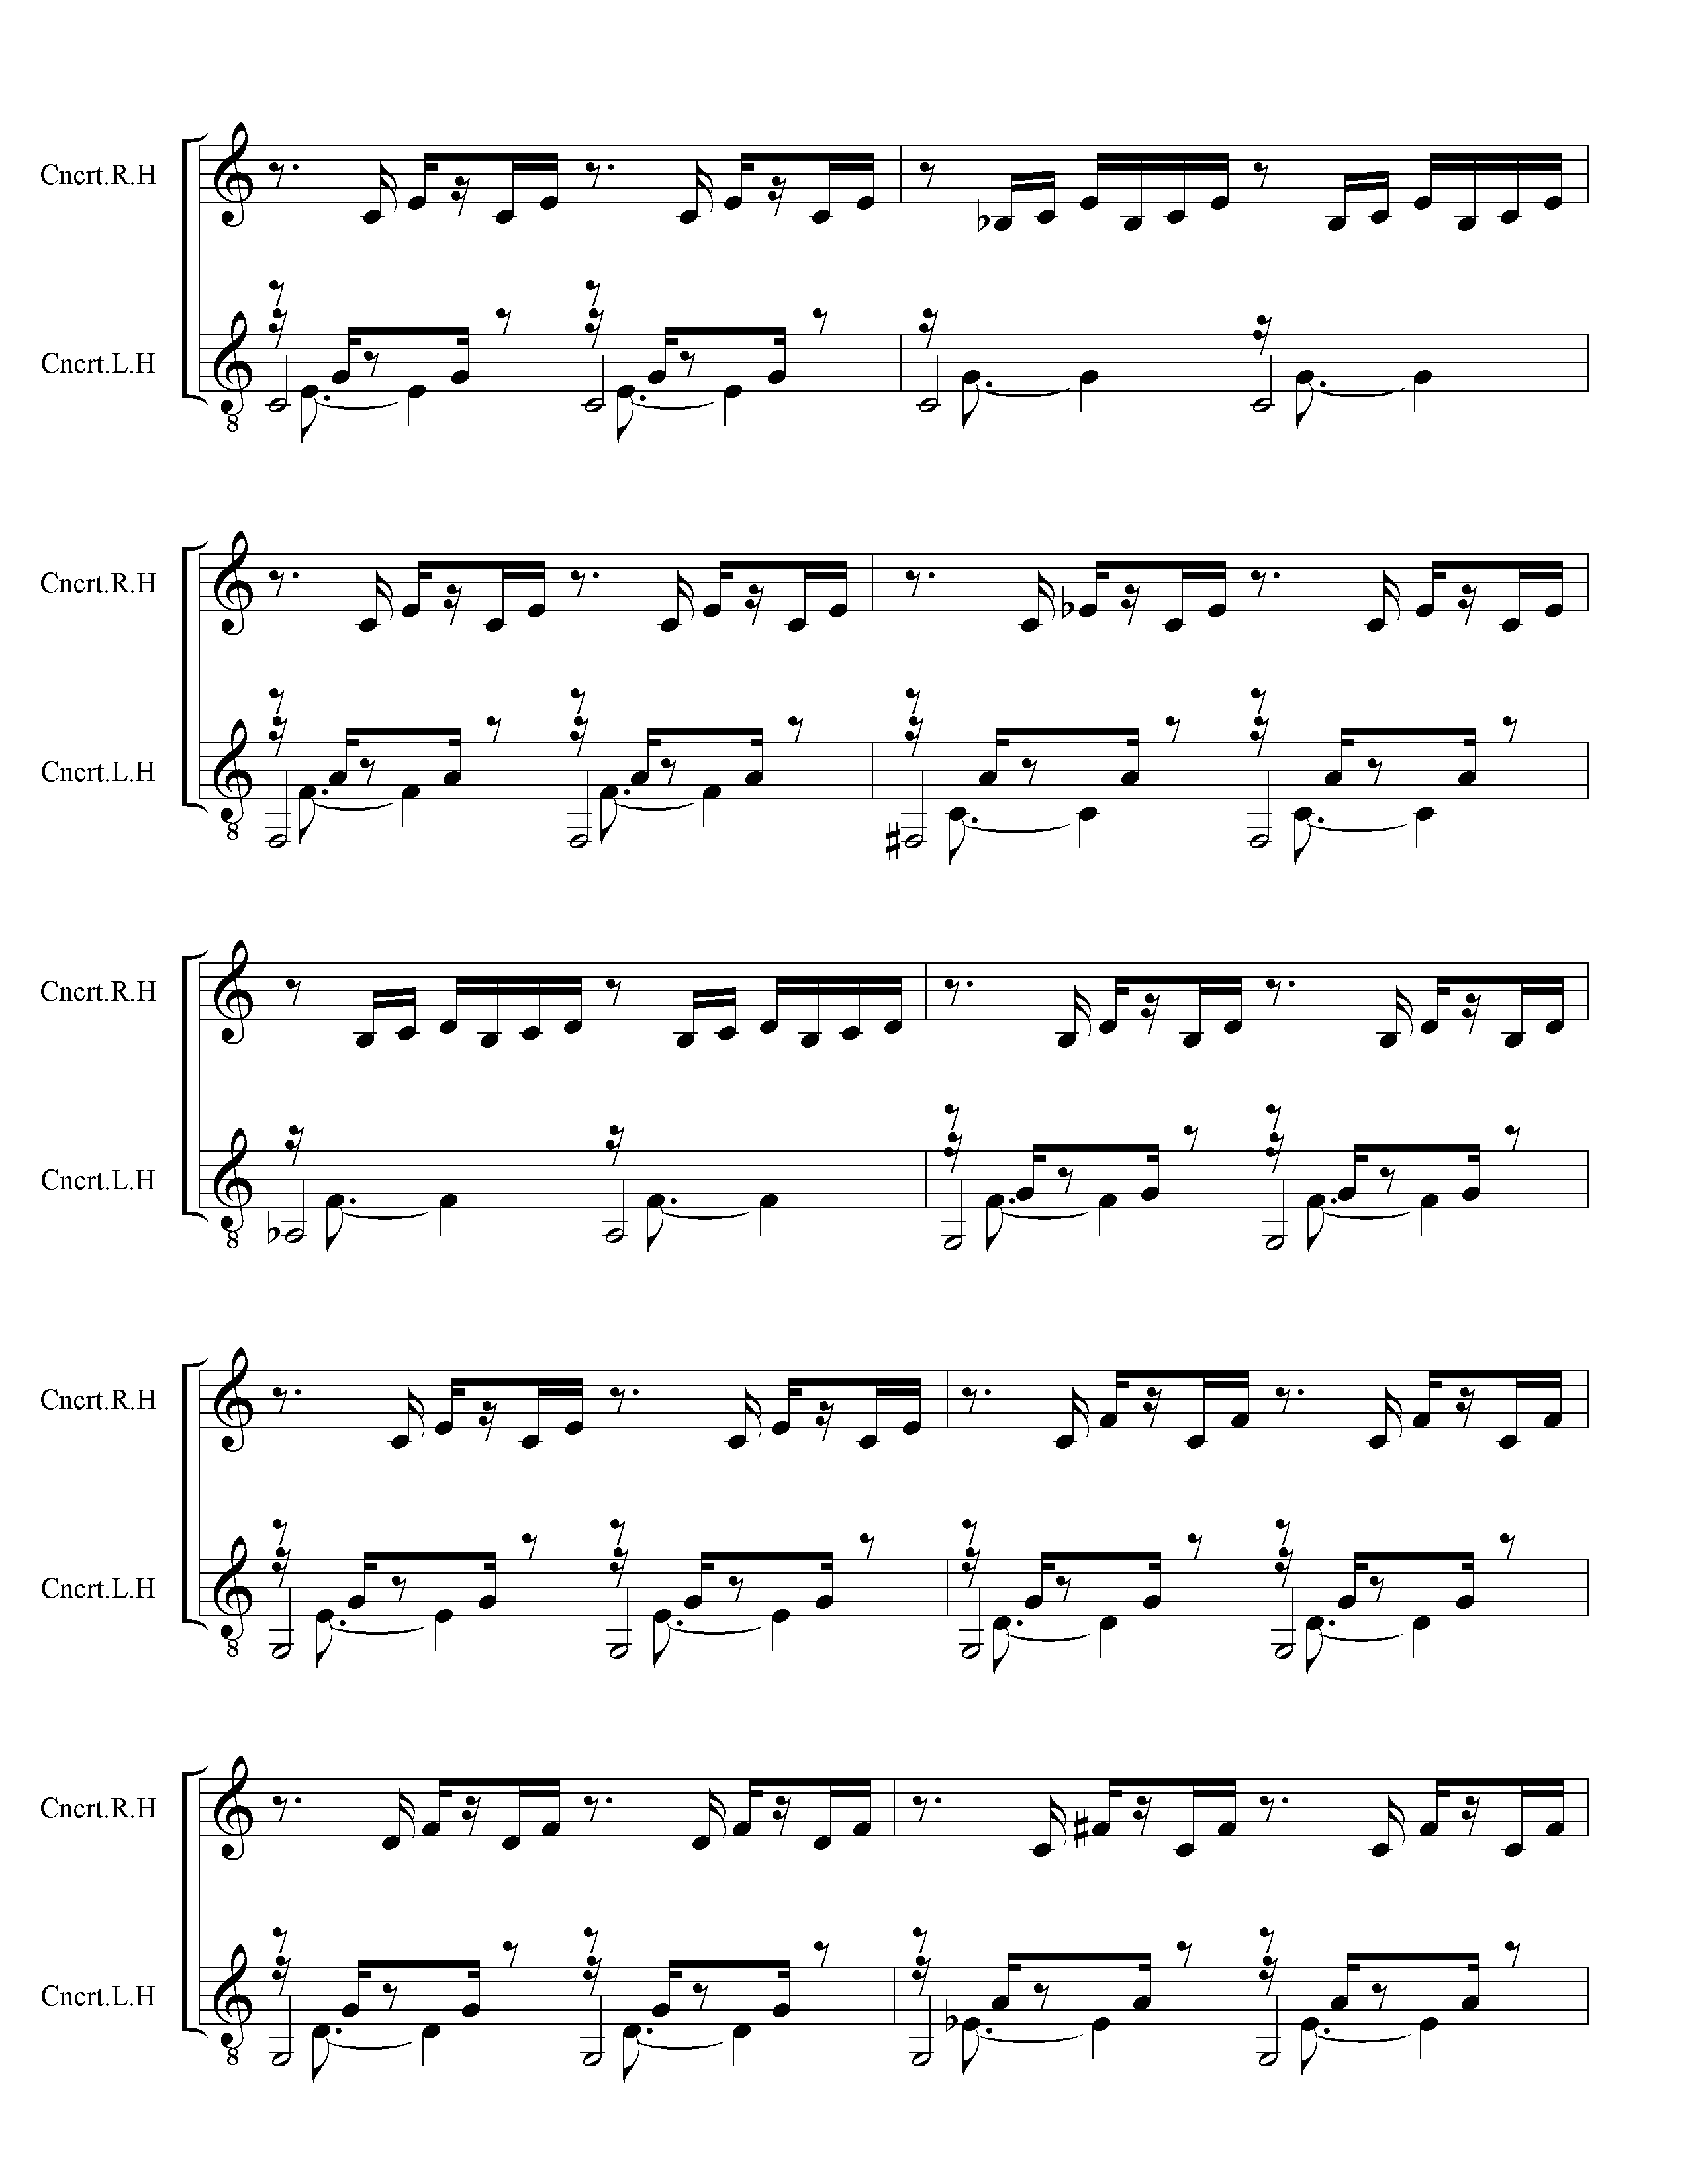 Page 3 (of 4) of J. S. Back Prelude 1 in C Major - Hayden Duet Arrangment